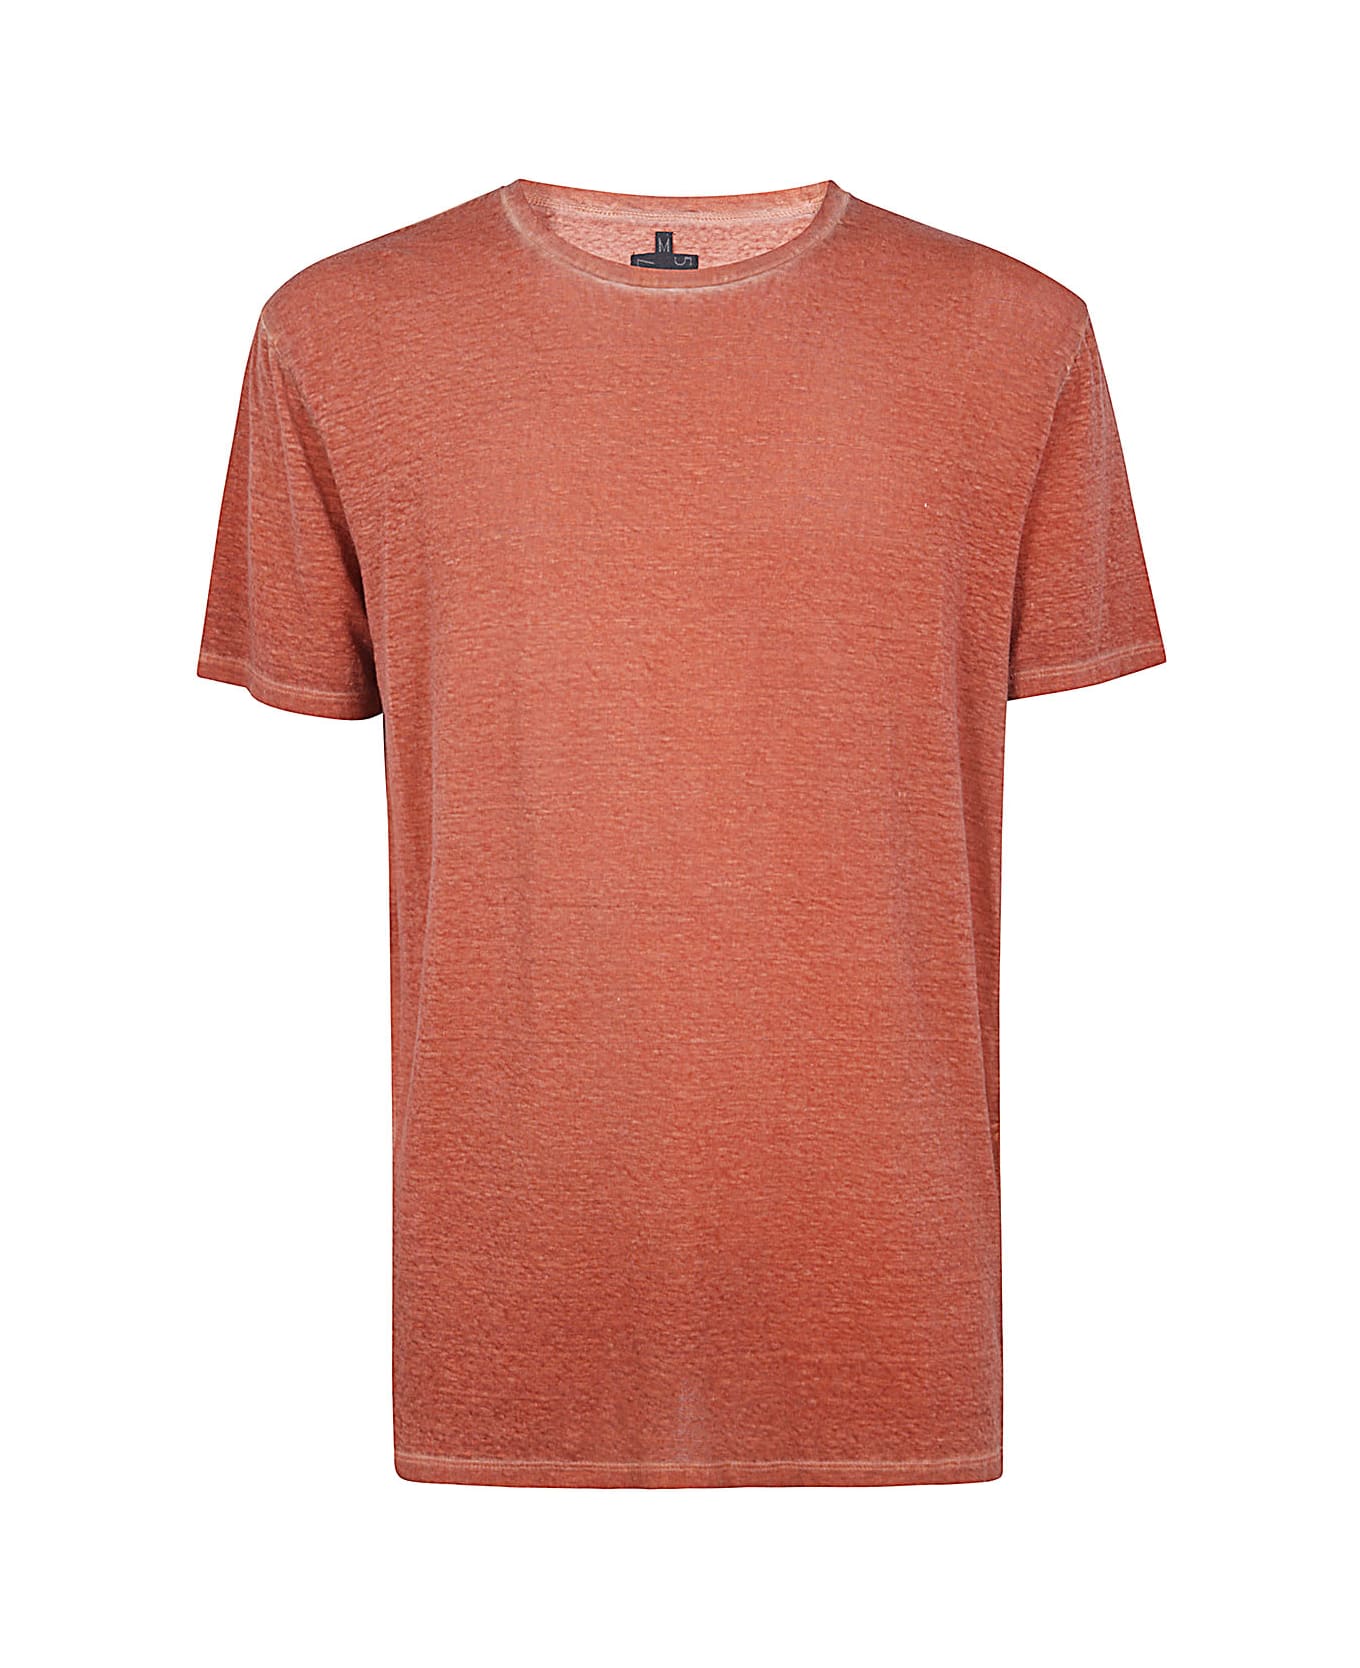 MD75 Linen T-shirt - Basic Orange シャツ